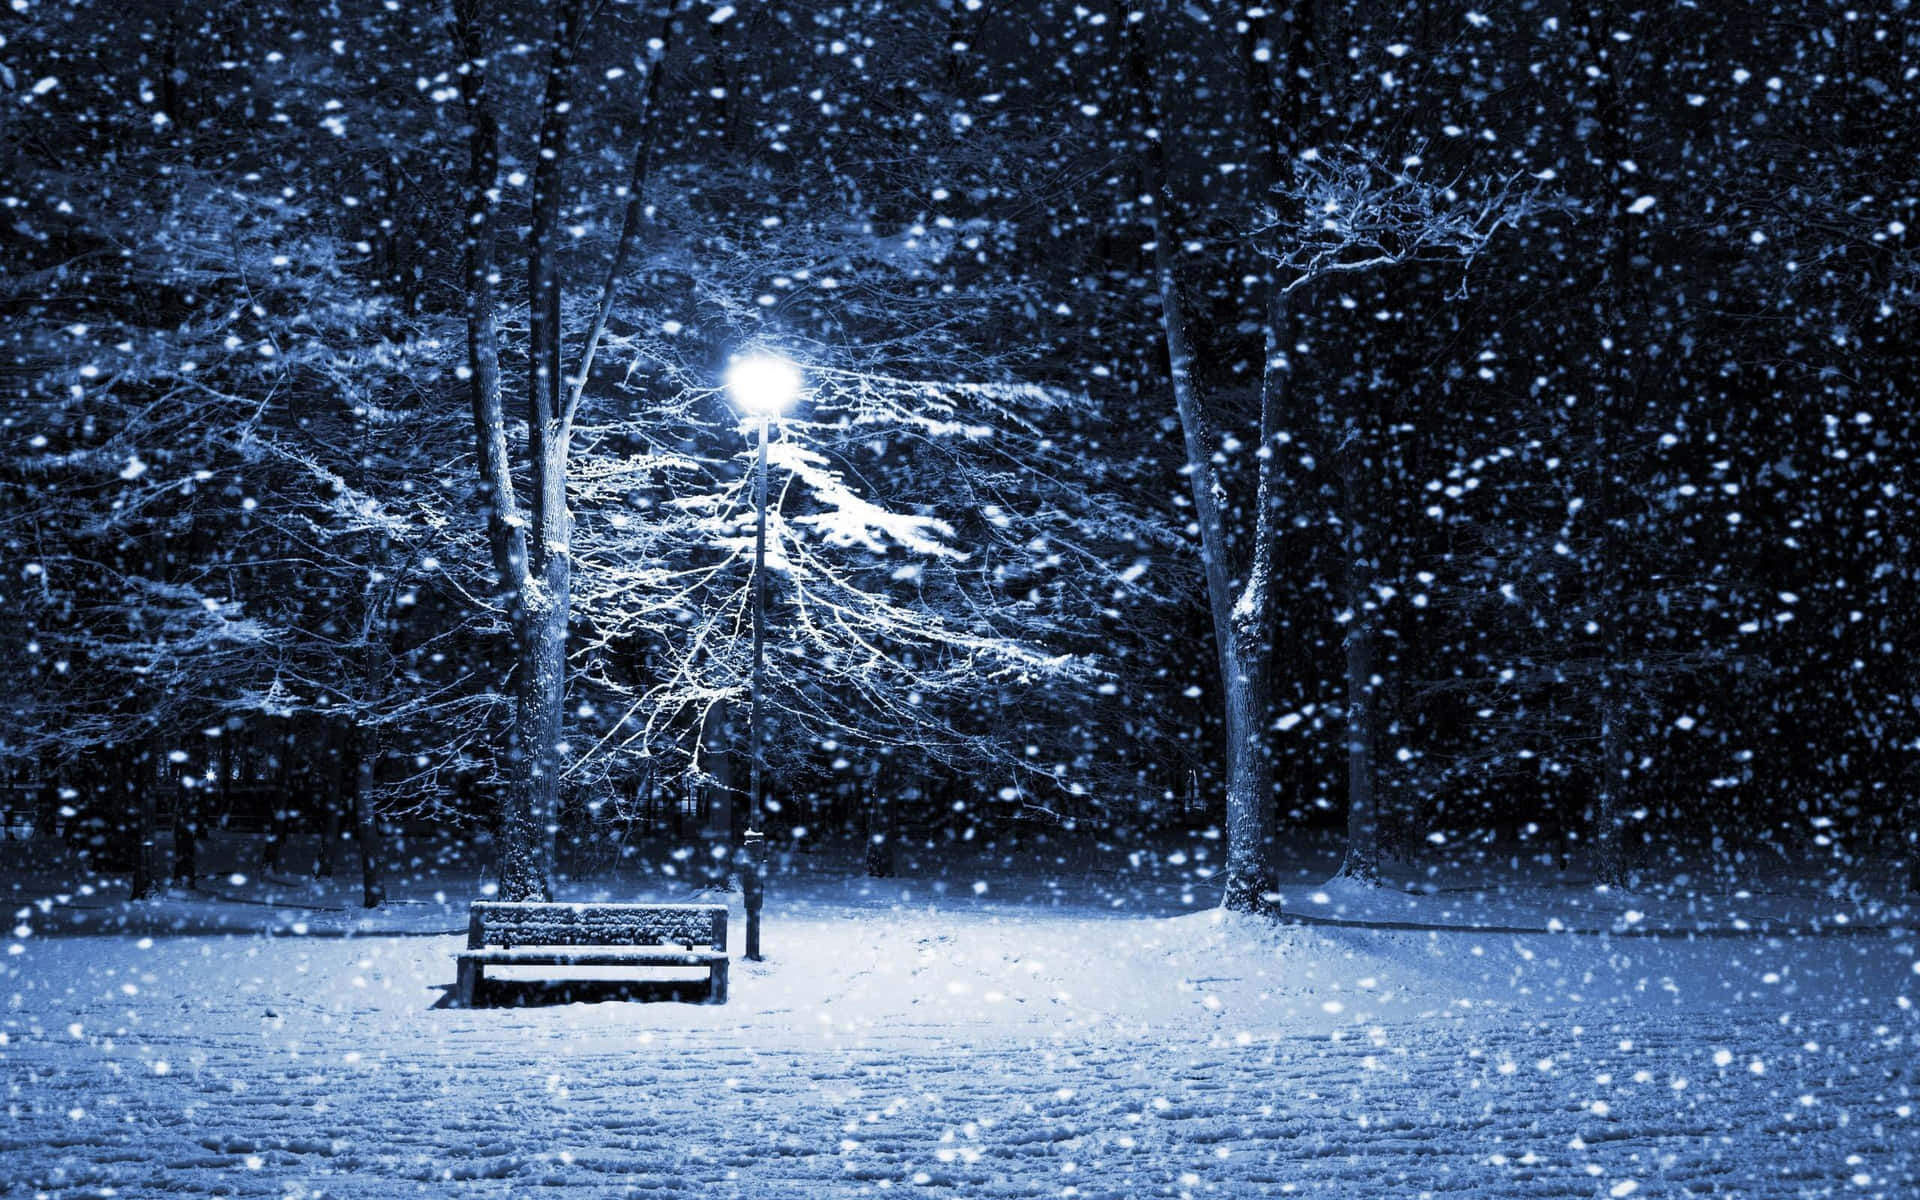 Lamp Post And Snowfall Winter Scenery Desktop Wallpaper